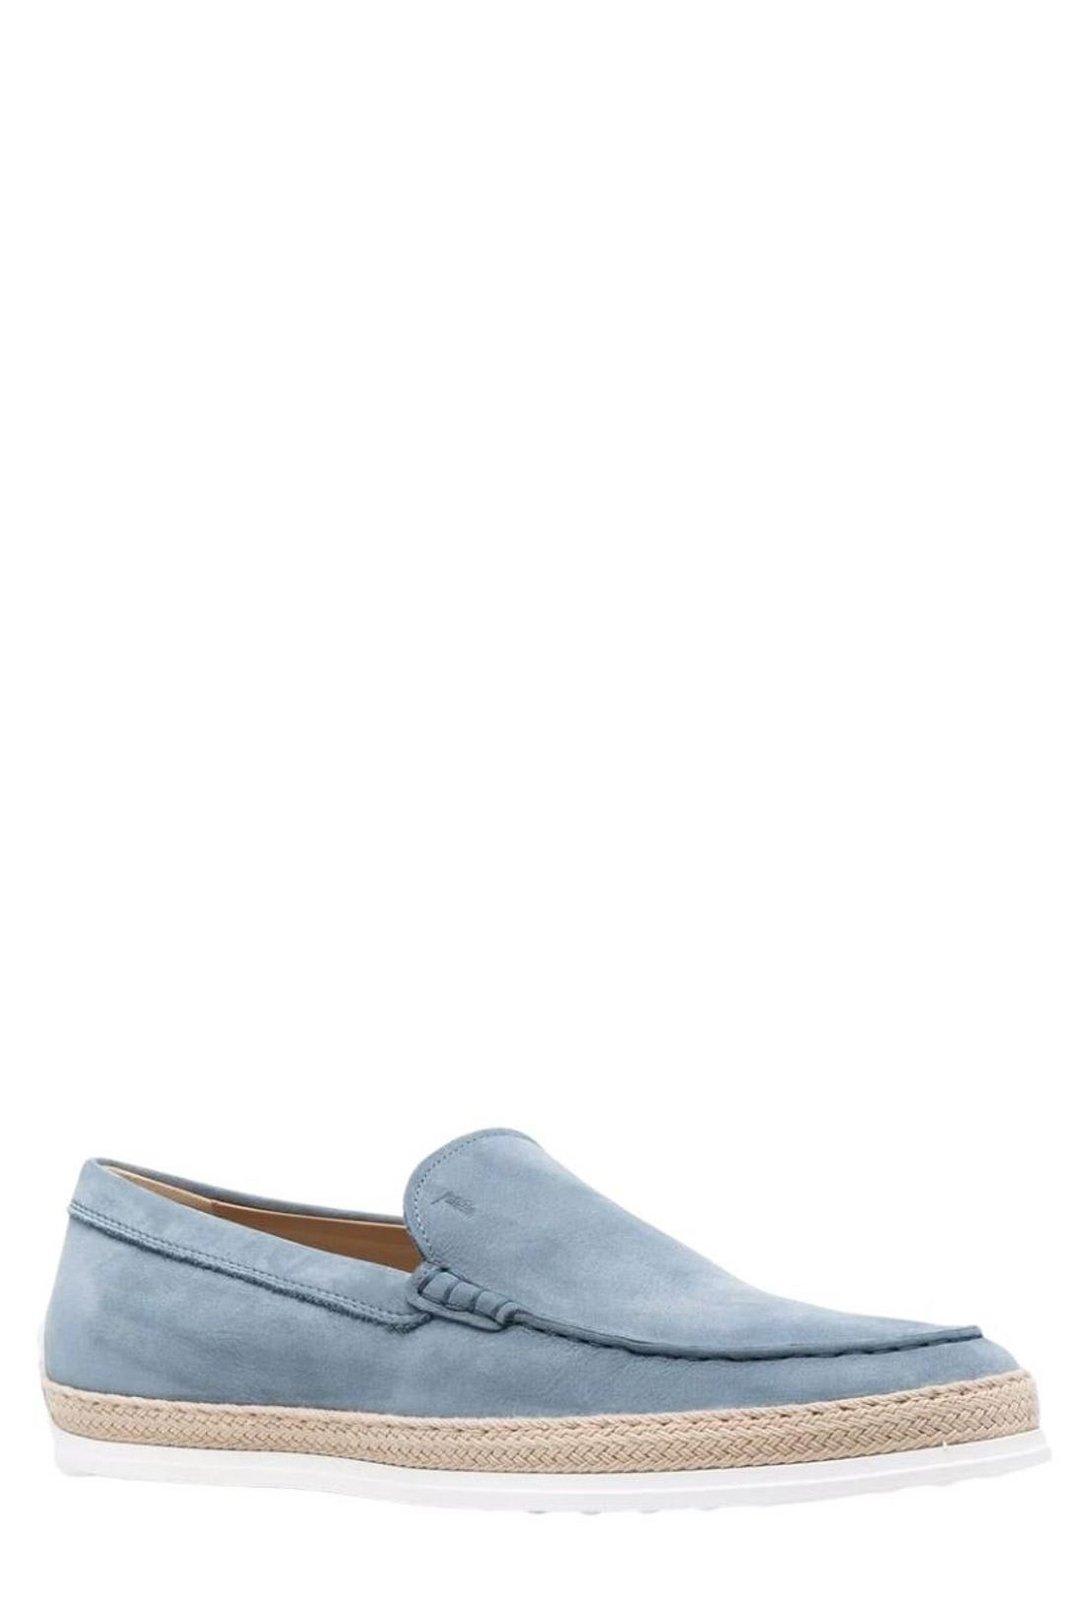 Shop Tod's Nuova Pantofola Slip-on Loafers